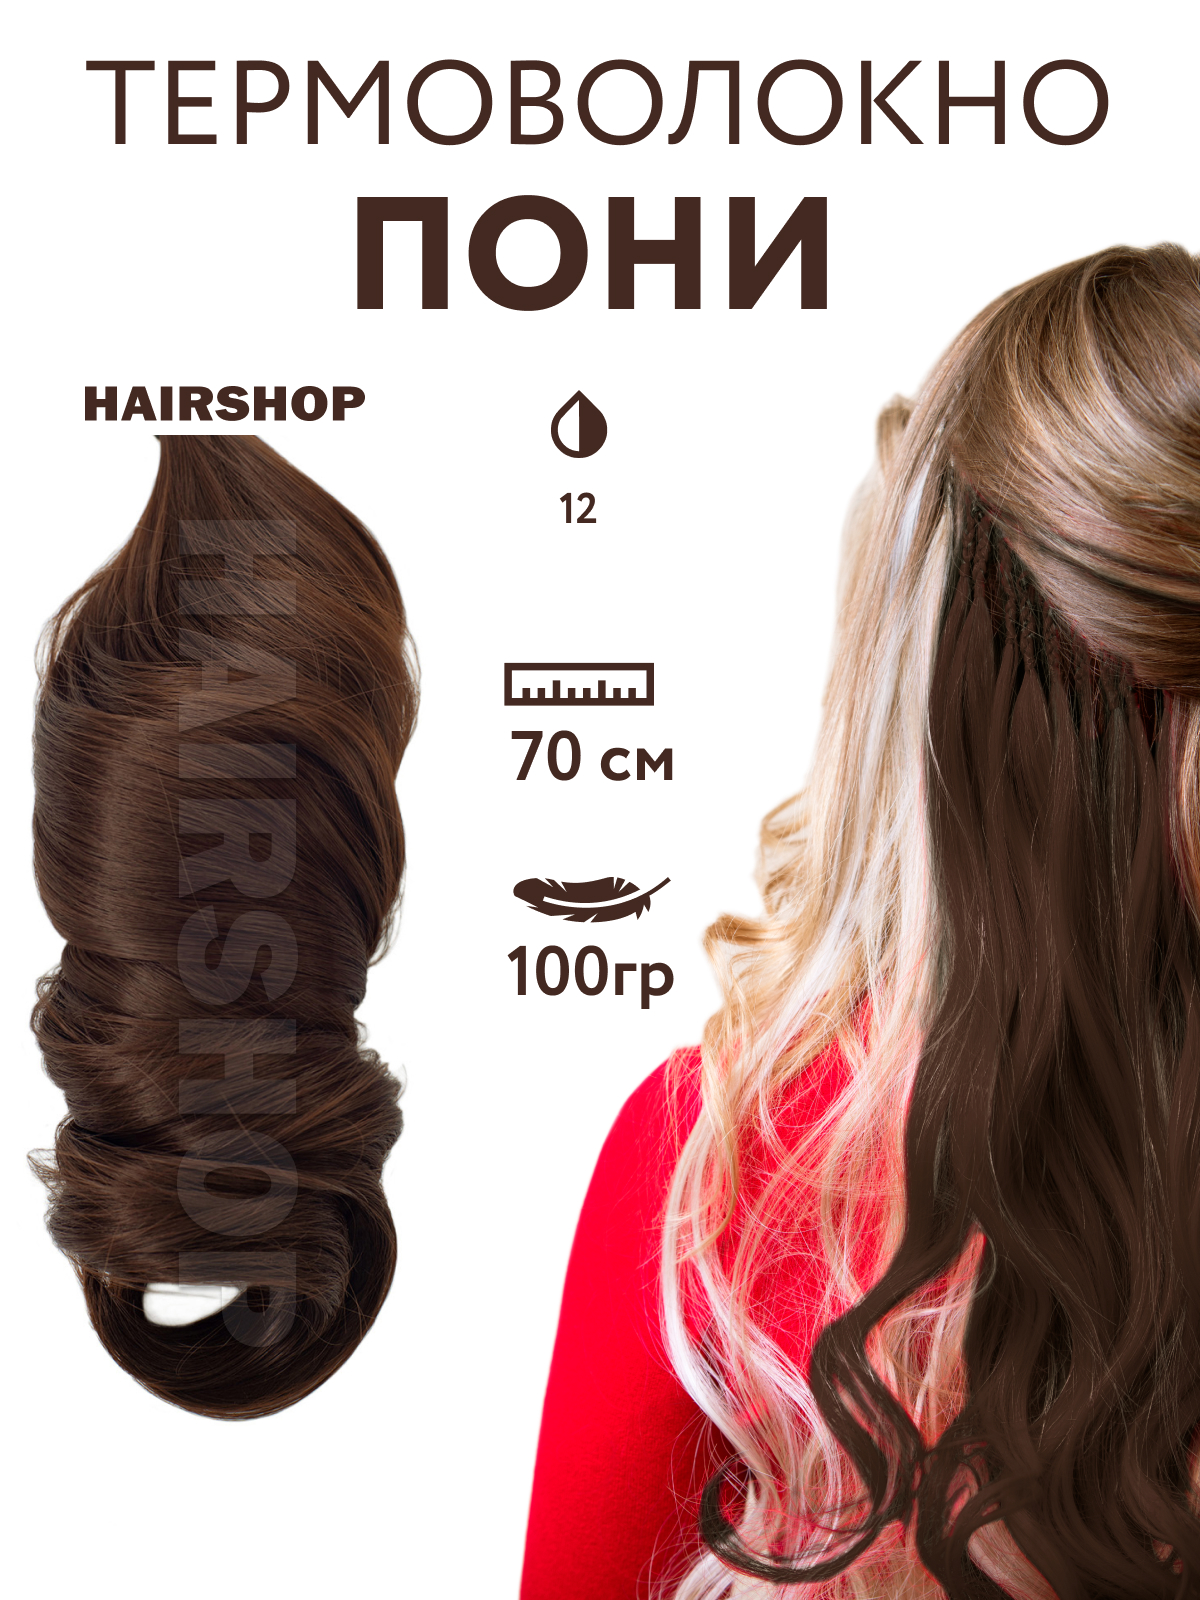 Канекалон Hairshop Пони HairUp для точечного афронаращивания 12 Золотисто-русый 1,4м канекалон hairshop пони hairup для точечного афронаращивания средне русый 1 4м